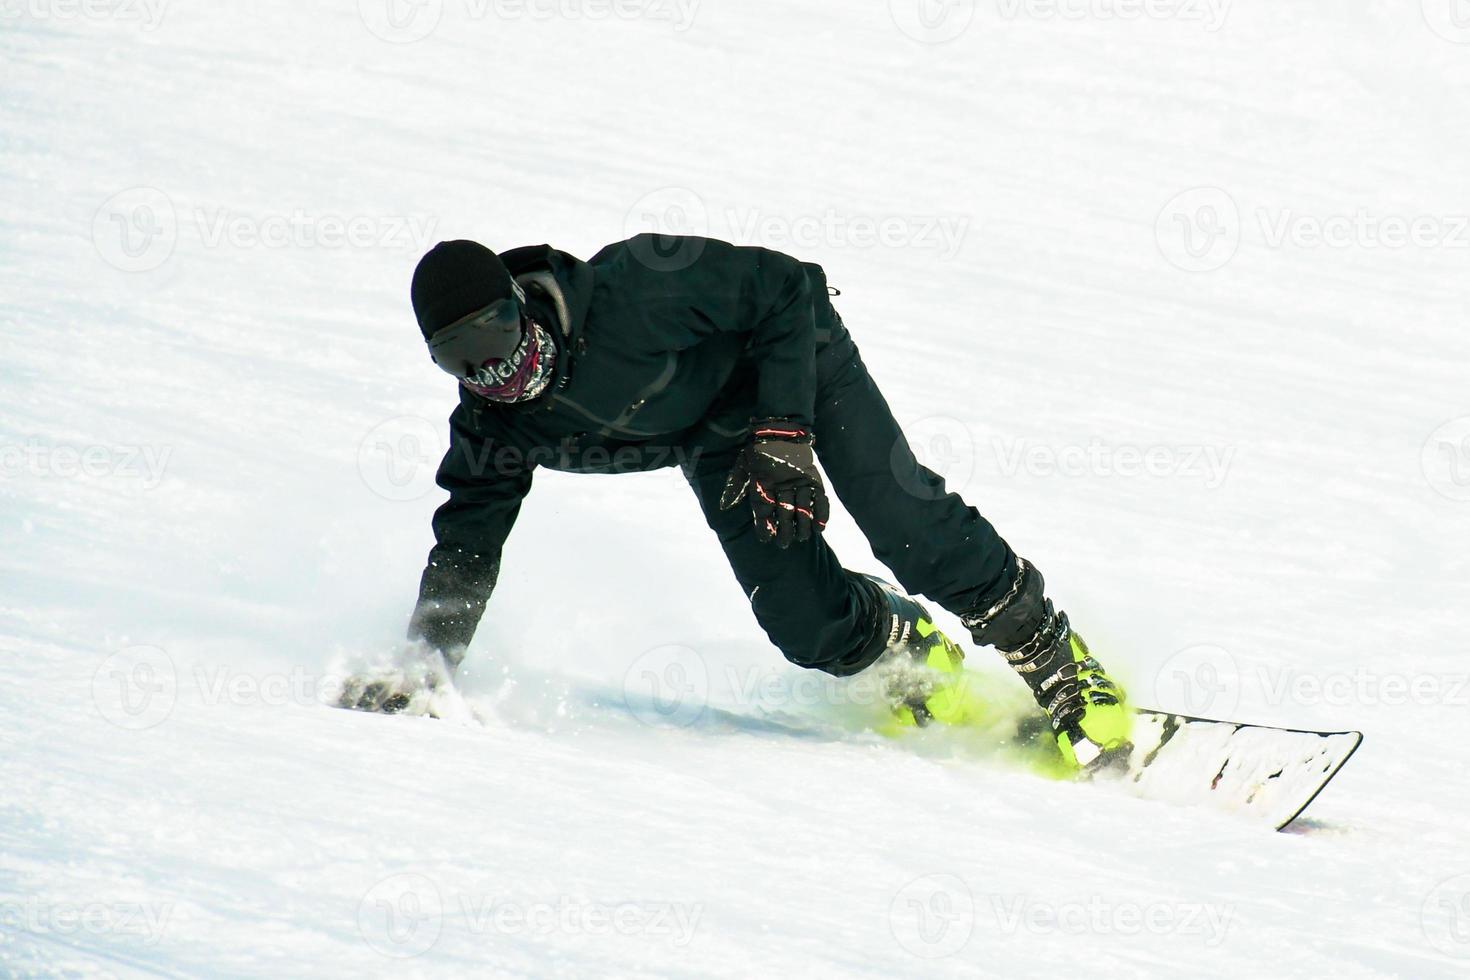 snowboardåkare på himmel utför. särskild vinter- sporter kombination .typer på snowboards och åka skidor sko typ sport foto